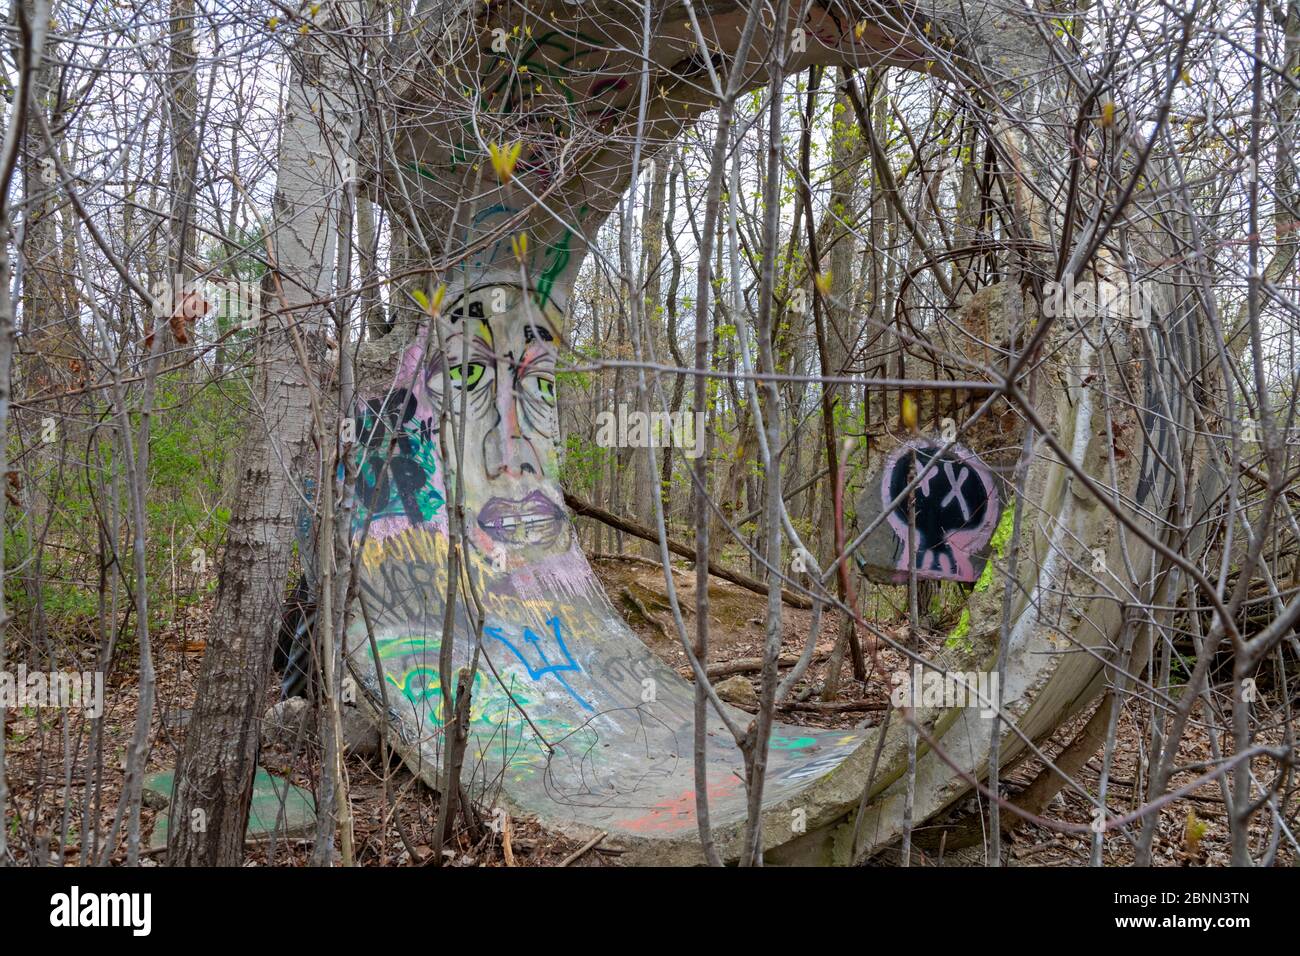 Washington Township, Michigan - EIN Stück Beton culvert, mit graffici bedeckt, in den Wäldern von Stony Creek Metropark. Stockfoto